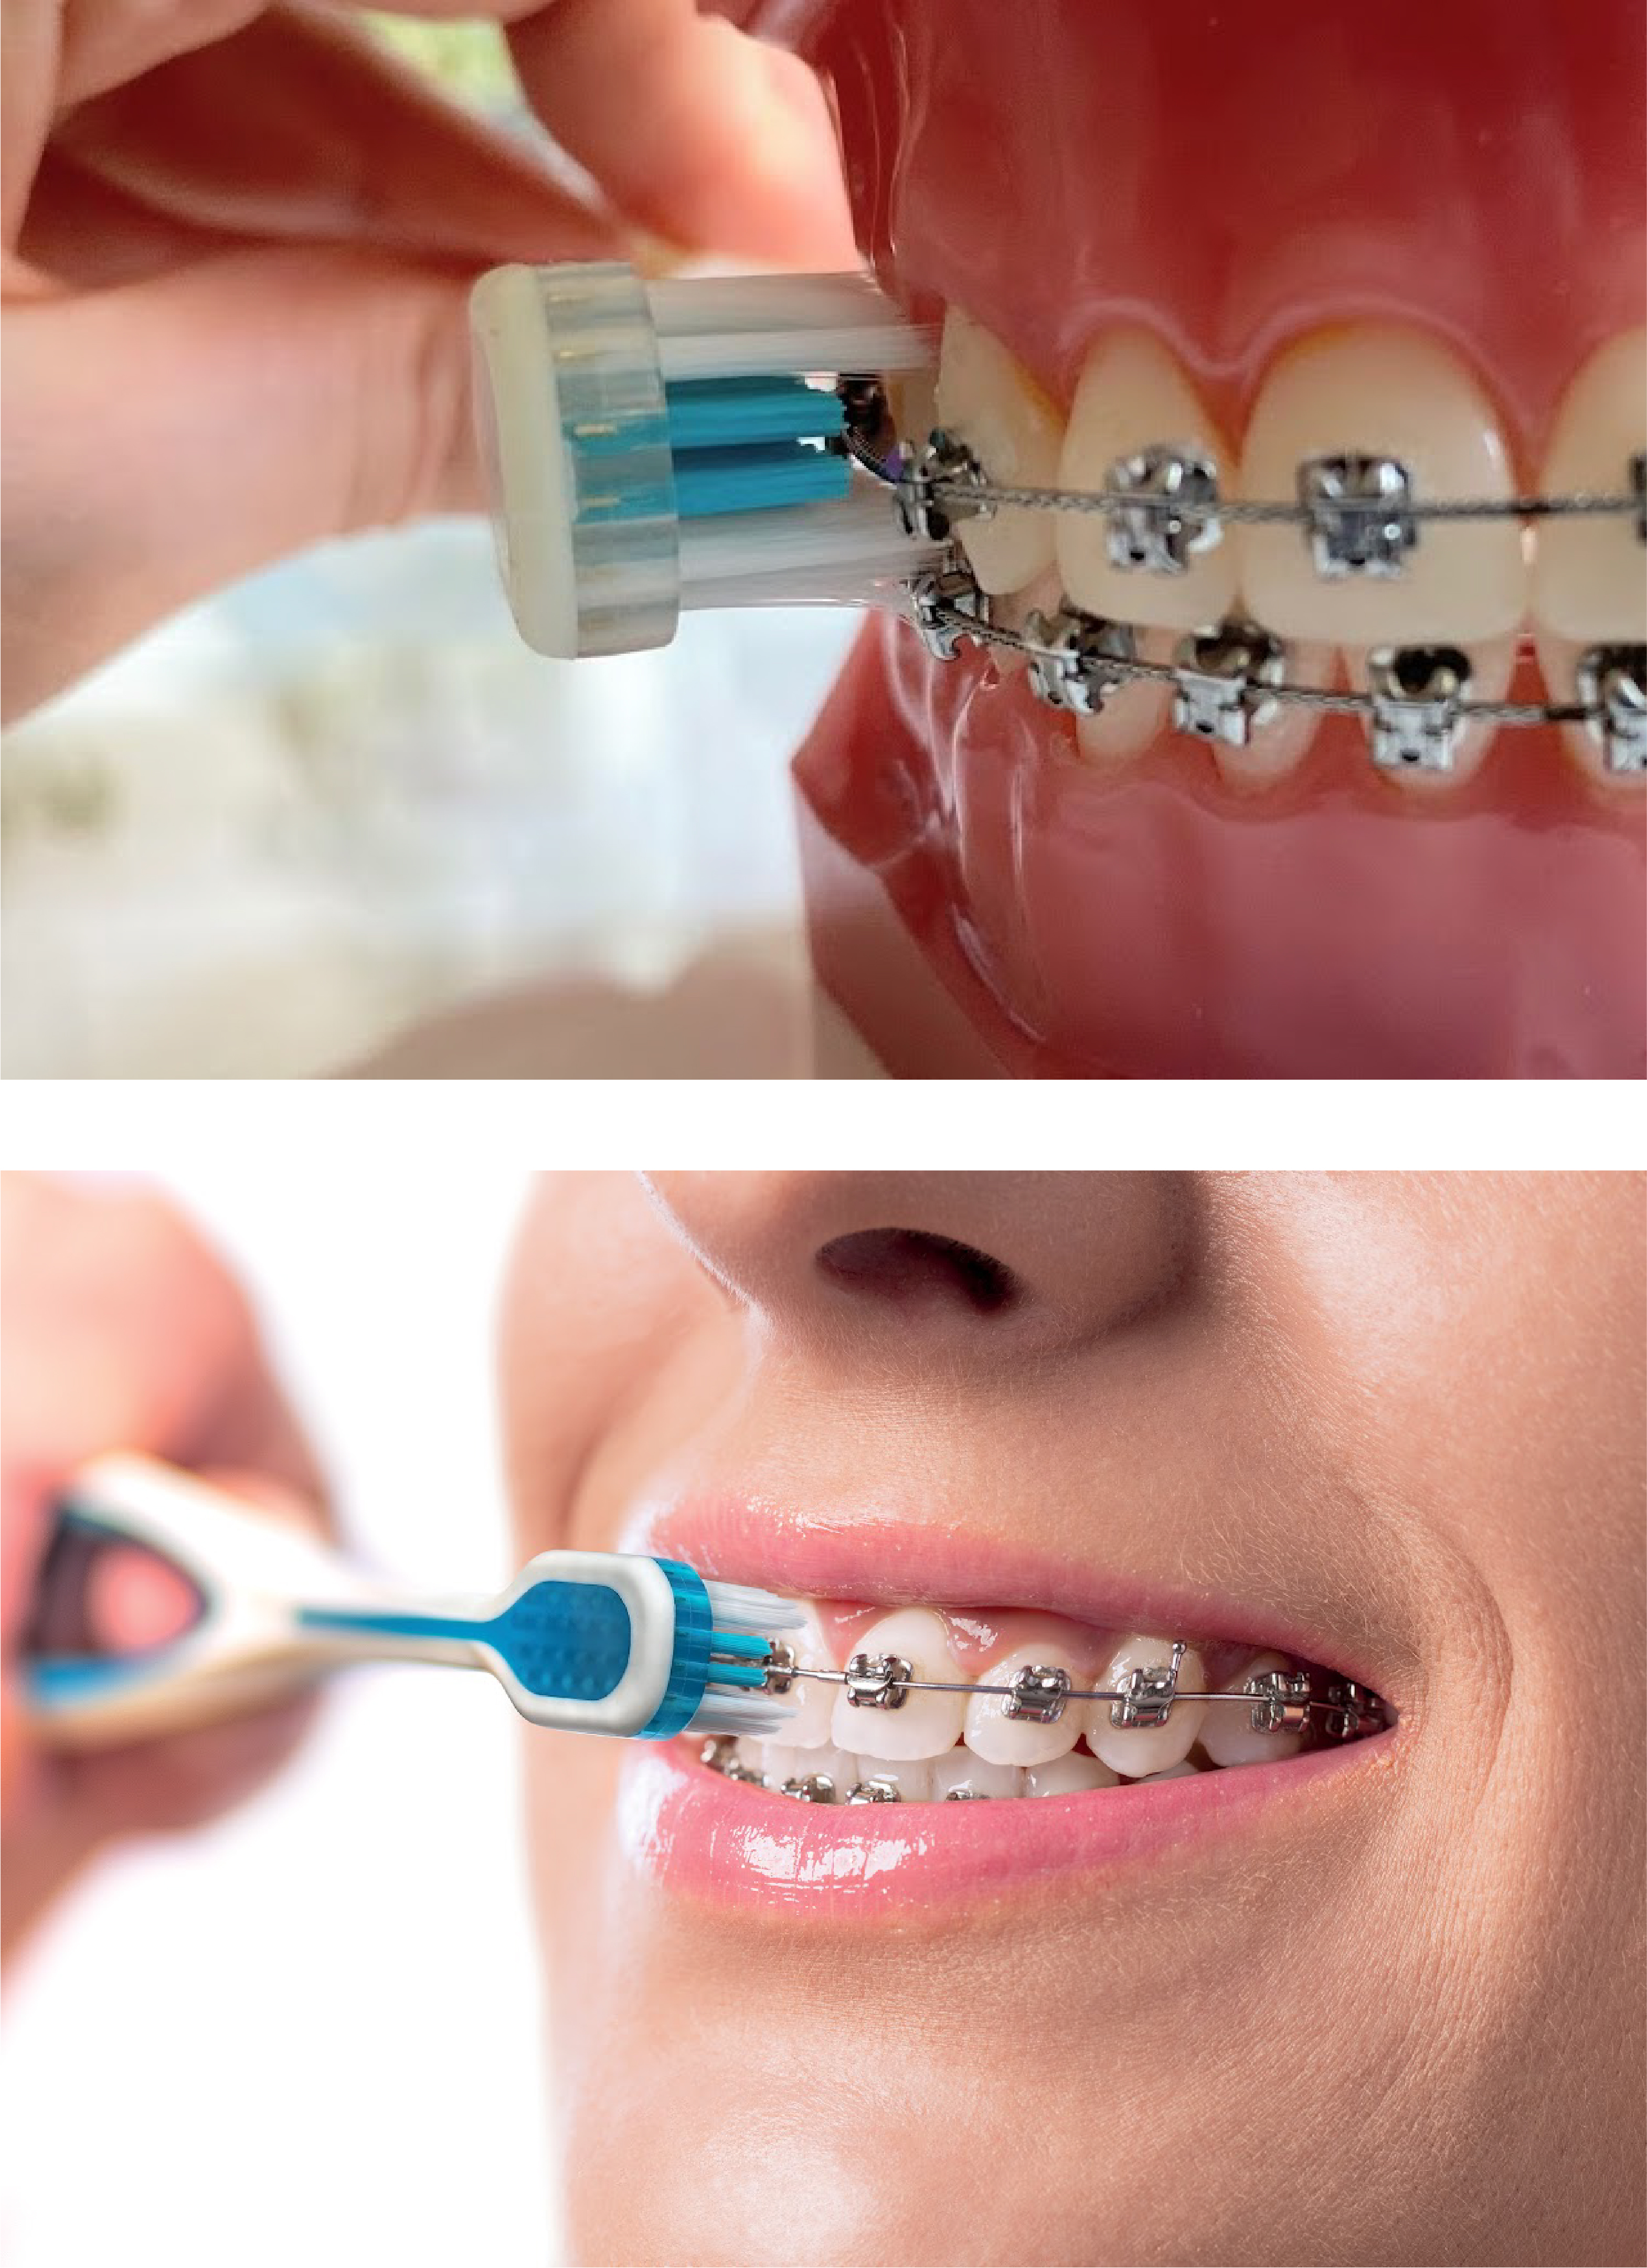 Prothèse dentaire : comment l'entretenir? - Docteur Ha Ludovic